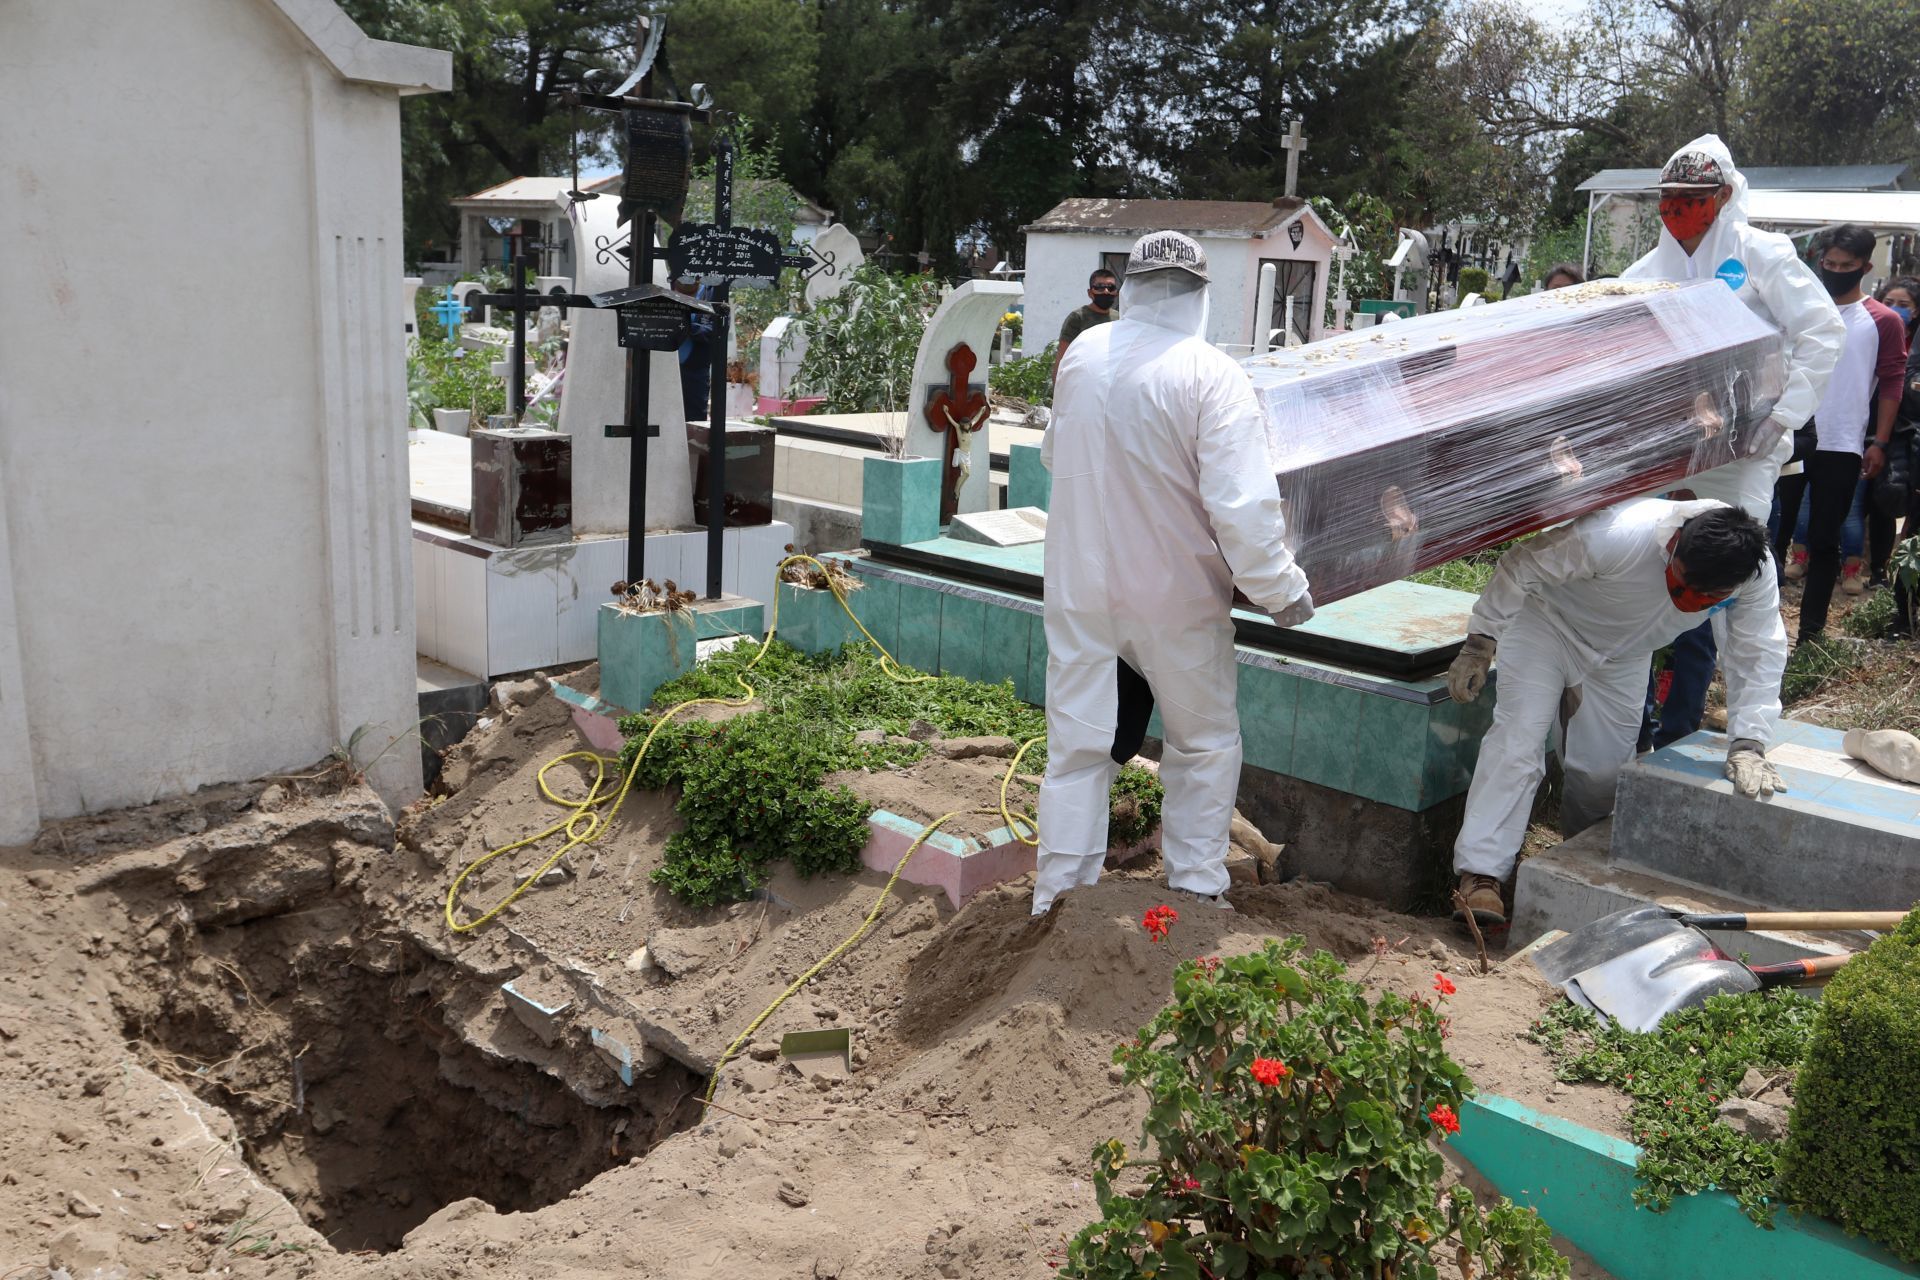 Mexico tiene más de 70 mil muertes de las que se estimaban para 2020